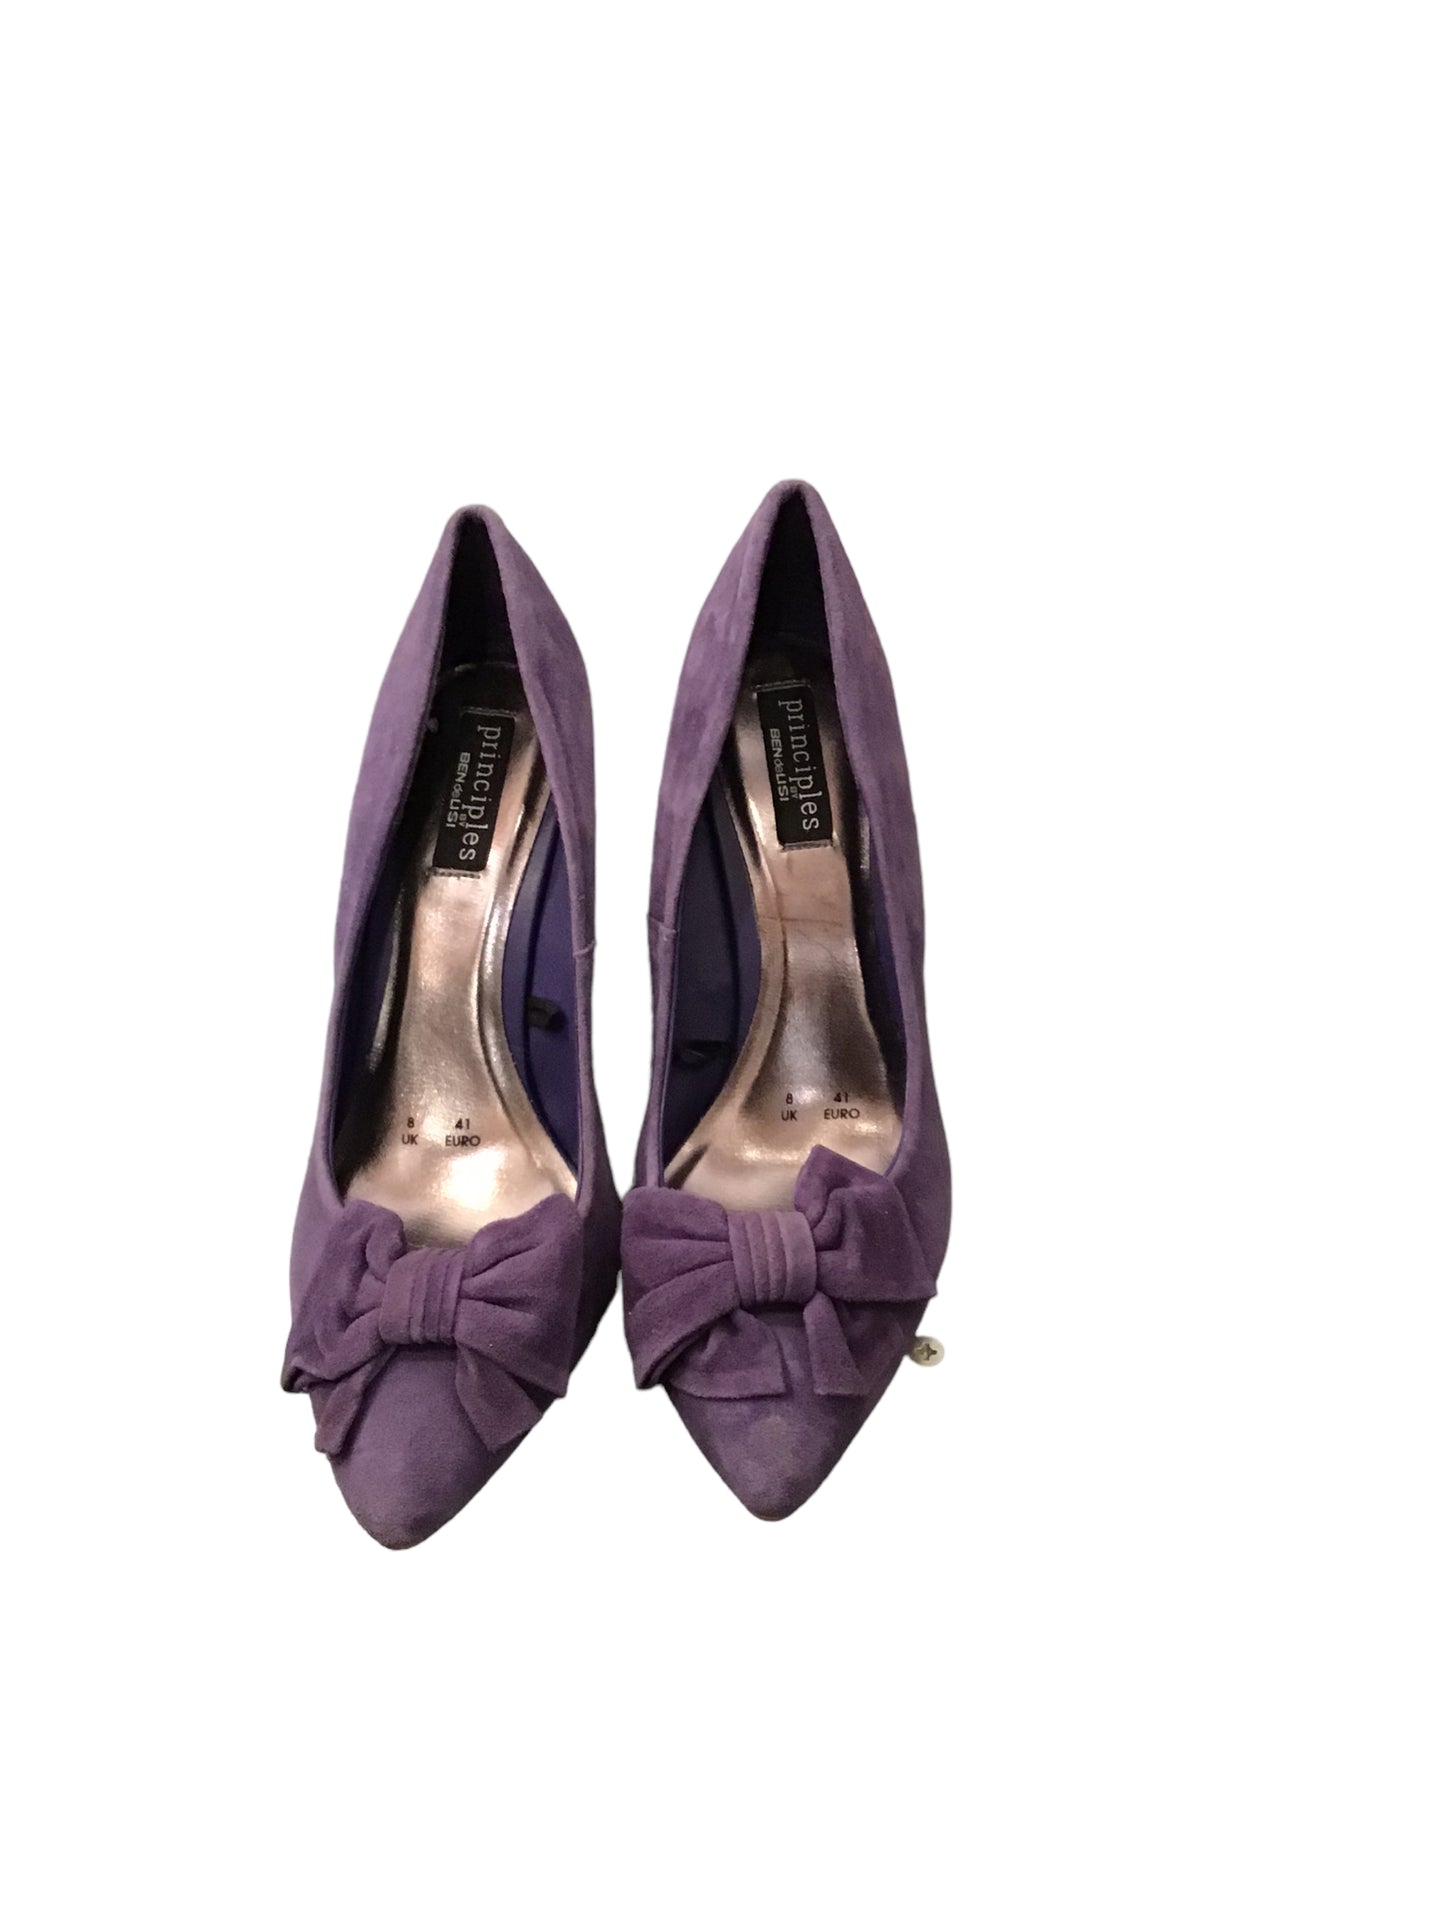 Women’s purple suede shoes by Ben De Lisi for Principles (size 8UK)